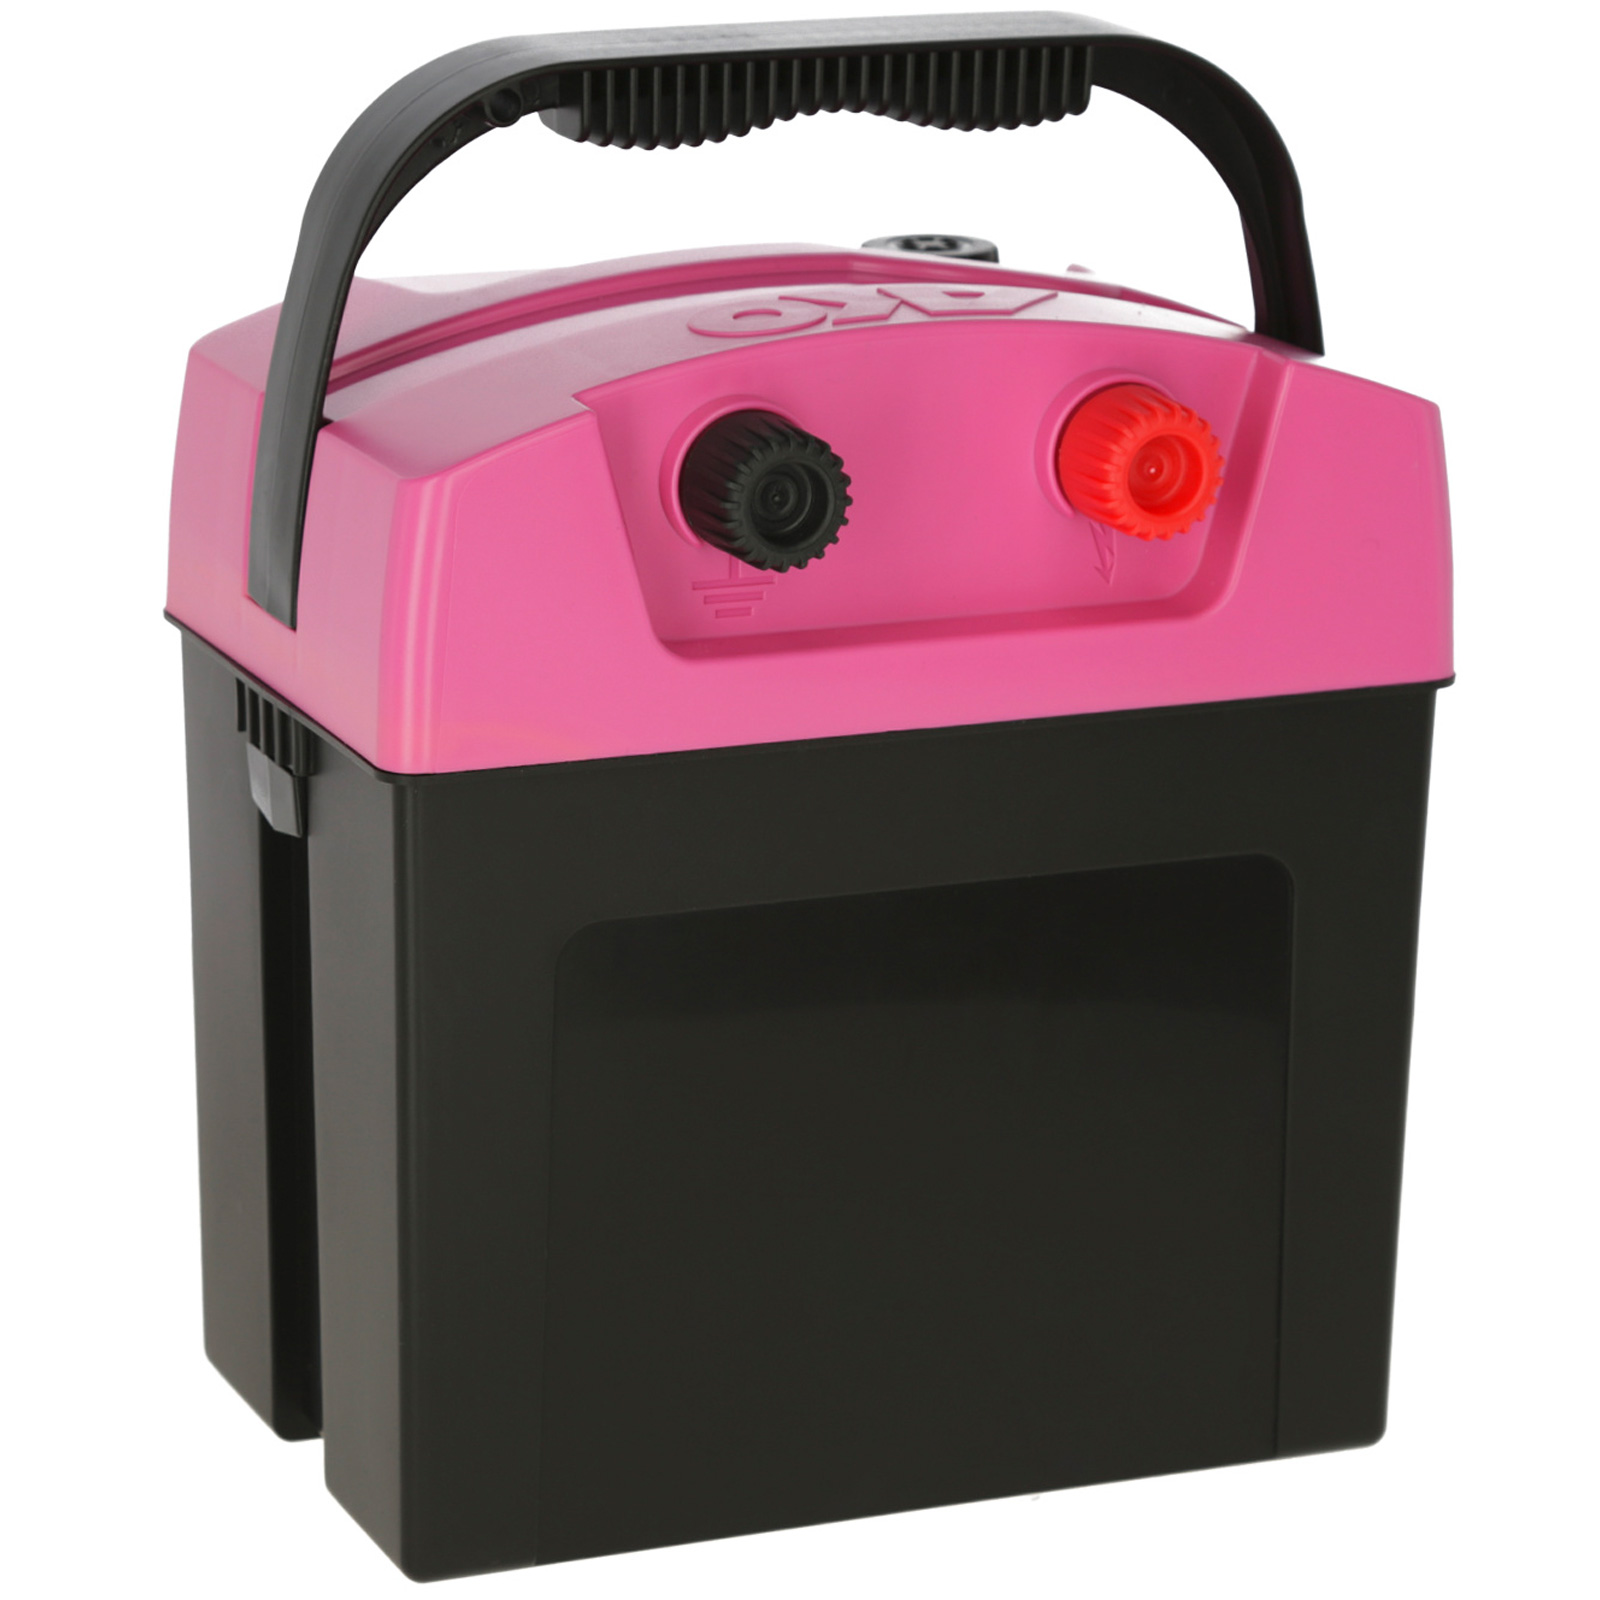 AKO villanypásztor készülék Compact Power B 180 9V, 0.26 Joule, pink